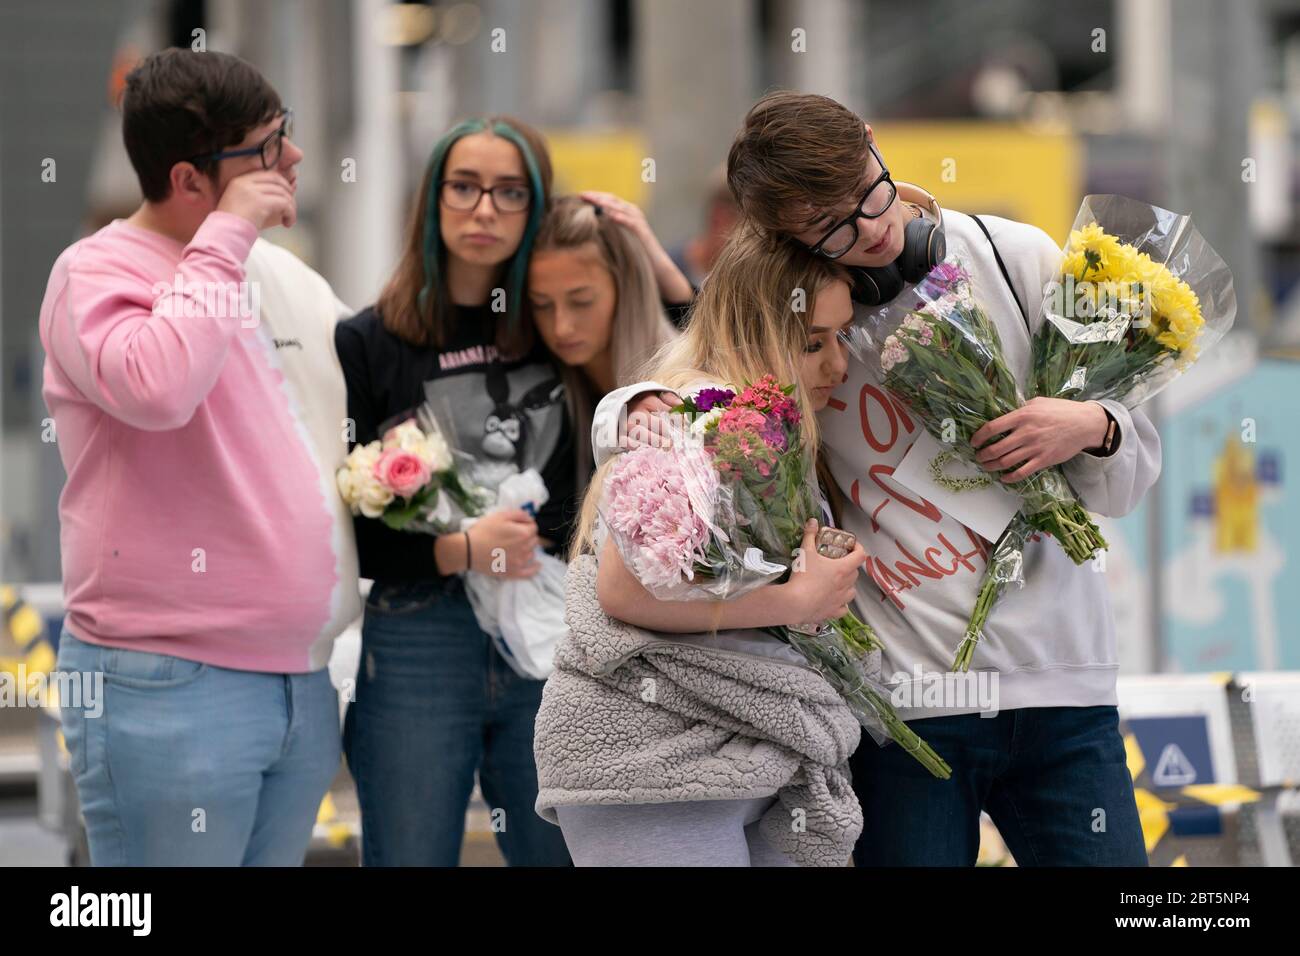 Manchester, Mai 22. Mai 2017. Peoplpe trauert bei einem Gedenkort des Angriffs auf die Manchester Arena in Manchester, Großbritannien, 22. Mai 2020. Manchester am Freitag war der dritte Jahrestag des Terroranschlags, bei dem 22 Menschen getötet und Hunderte verletzt wurden. Der Angriff geschah, als Salman Abedi am Ende eines Konzerts der US-Popsängerin Ariana Grande am 22. Mai 2017 eine Bombe zündete. Kredit: Jon Super/Xinhua/Alamy Live News Stockfoto